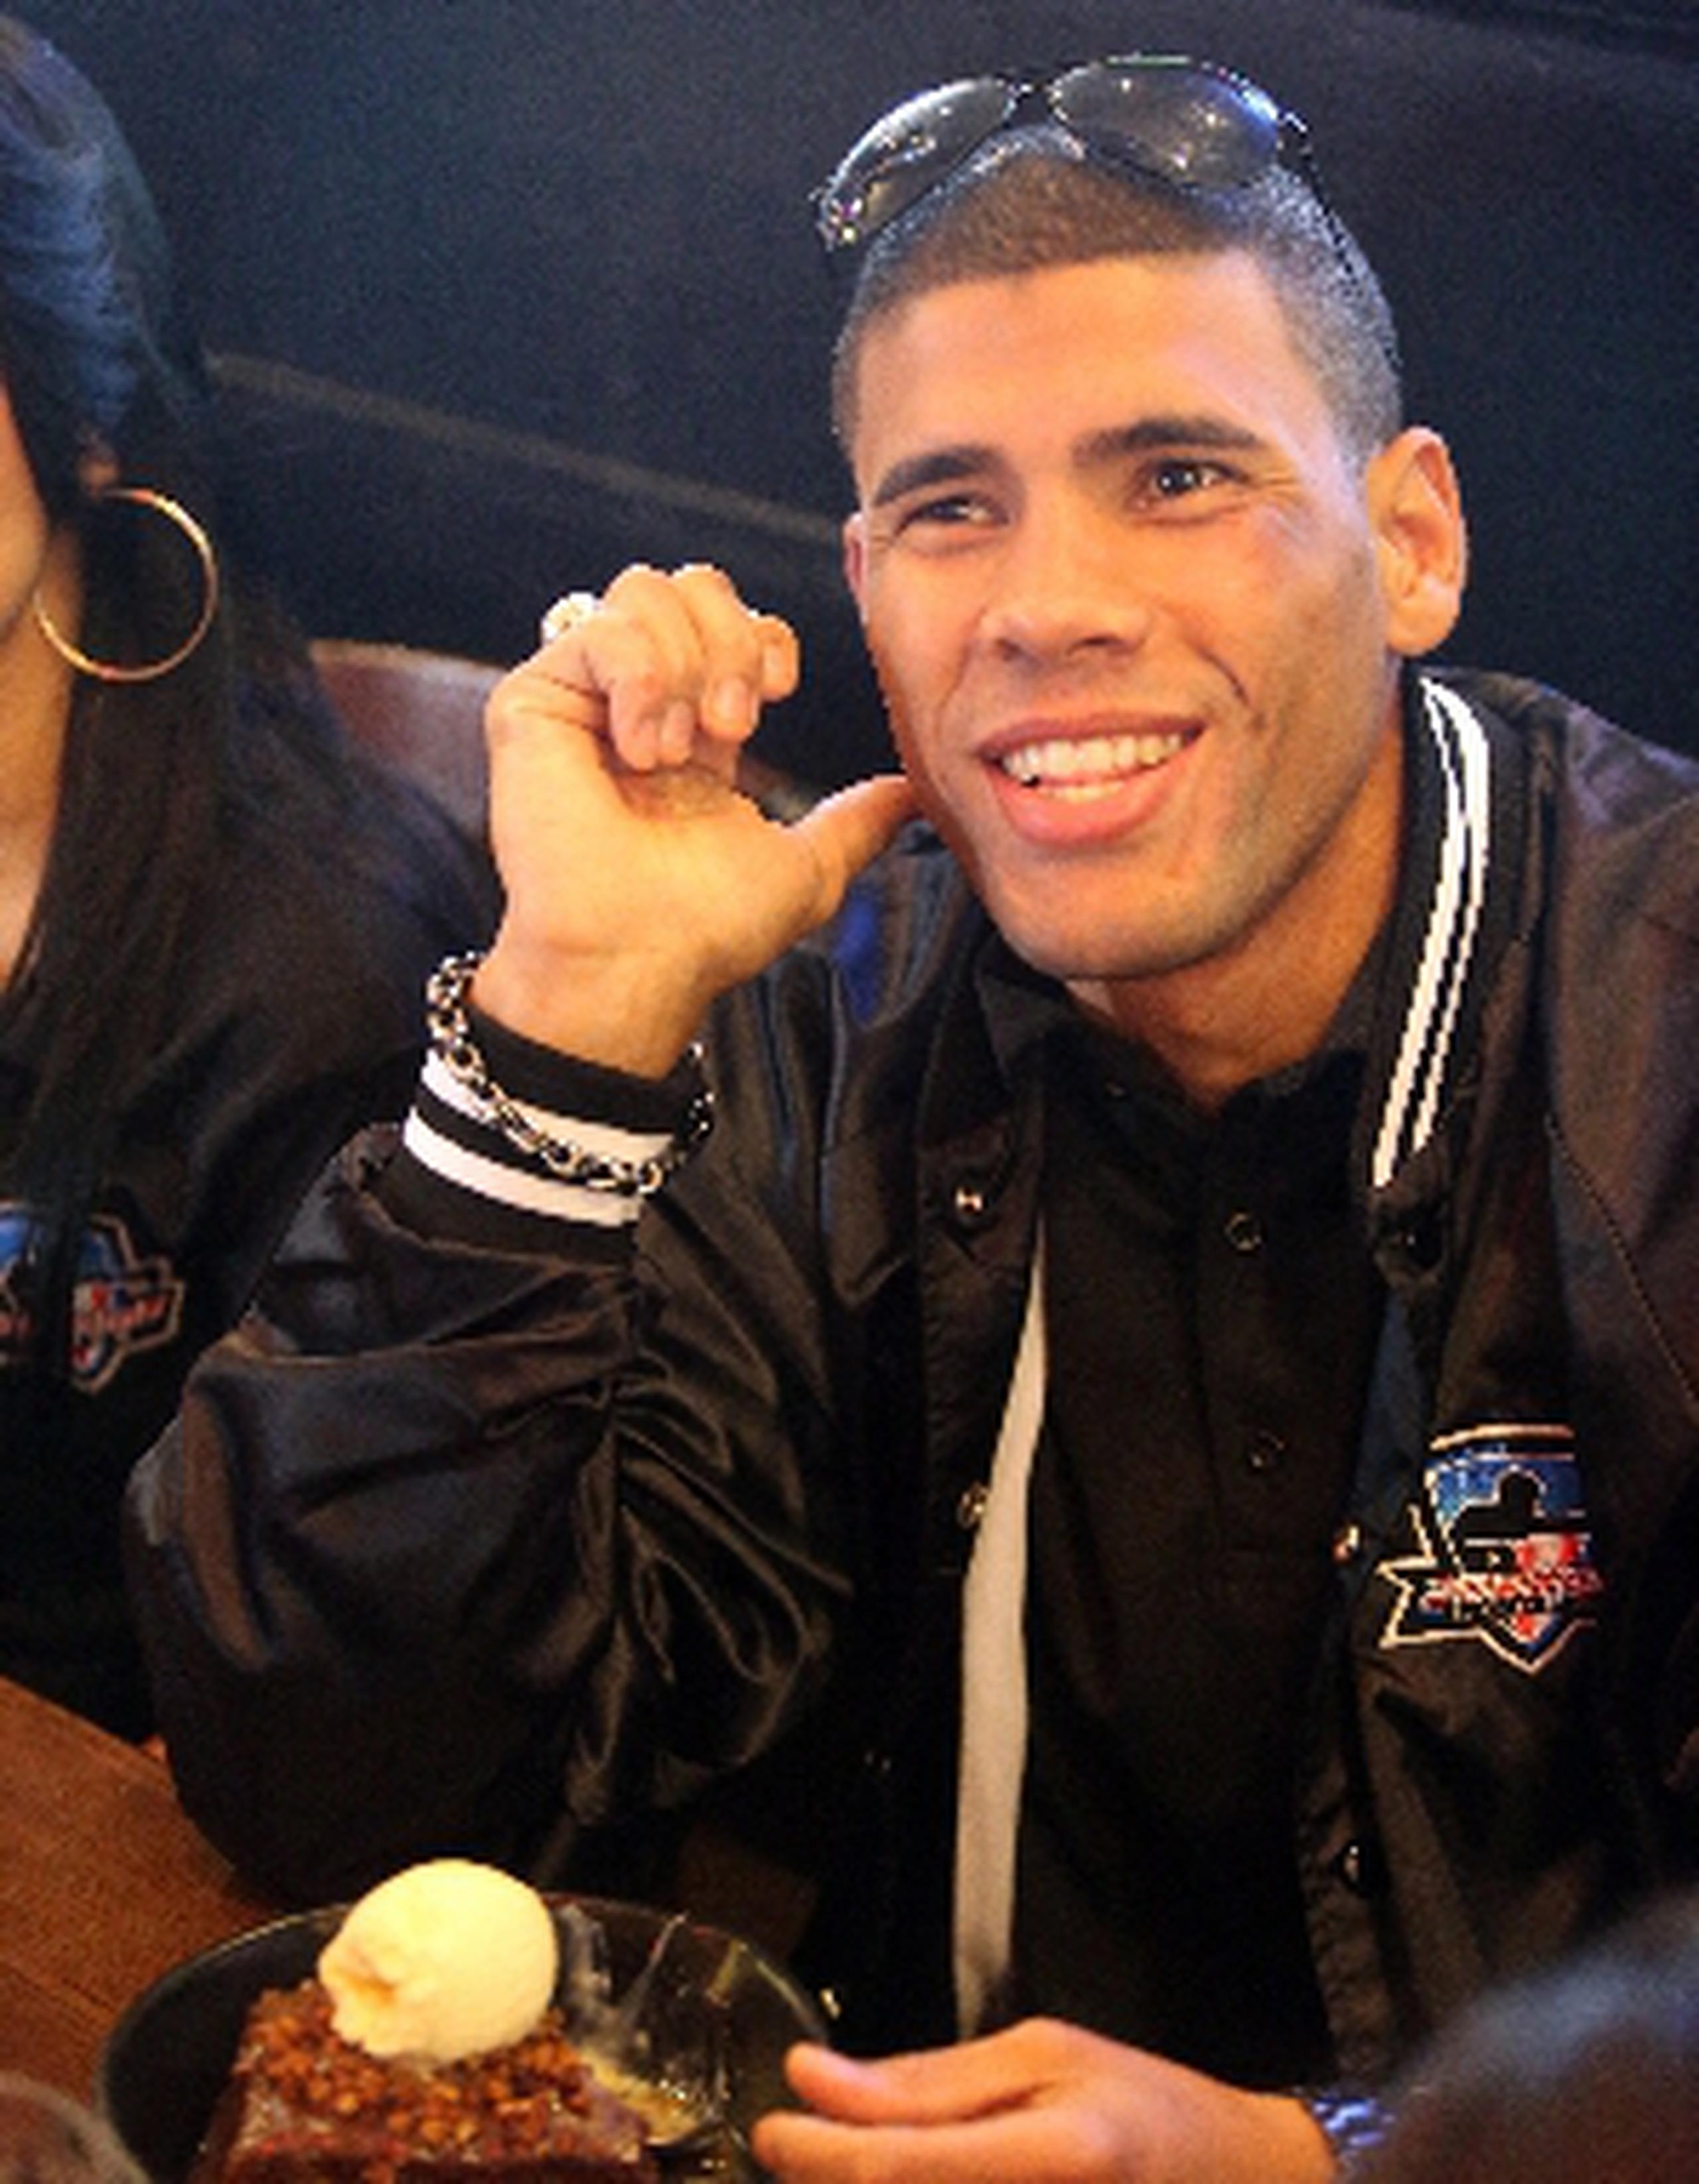 López volverá al ring a finales de año o principios del 2014. (david.villafane@gfrmedia.com)